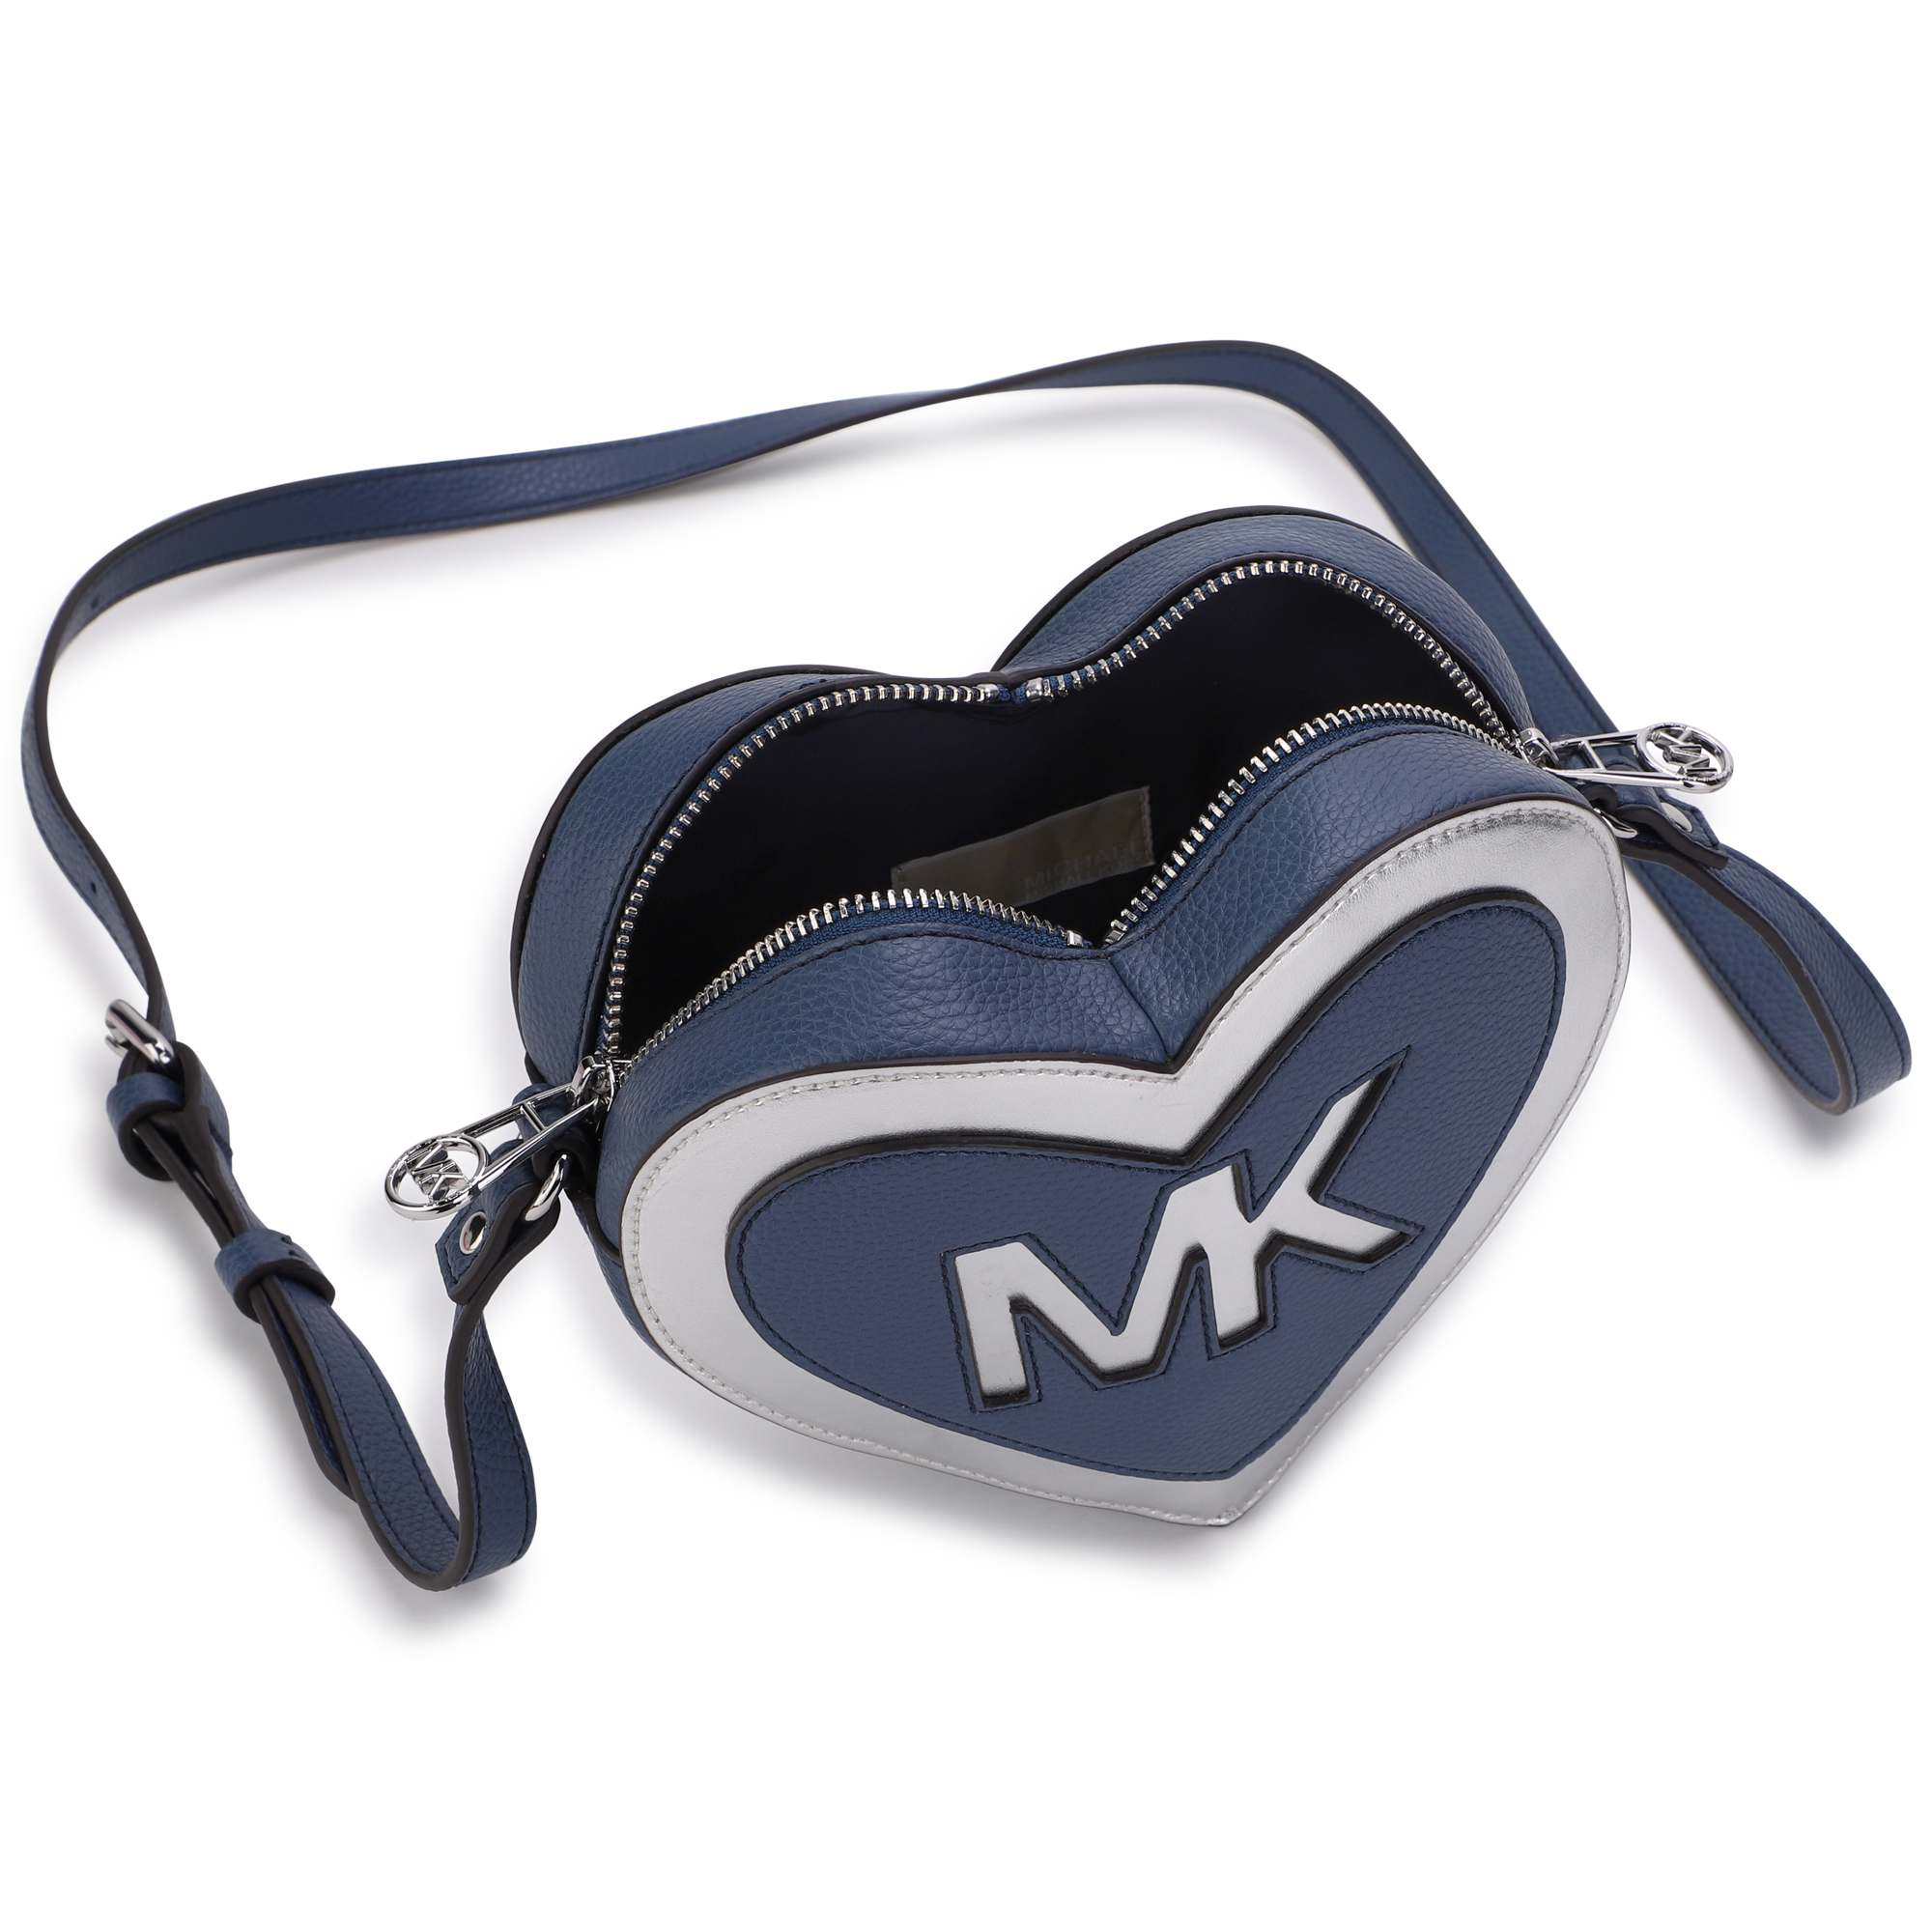 Heart bag with shoulder strap MICHAEL KORS for GIRL